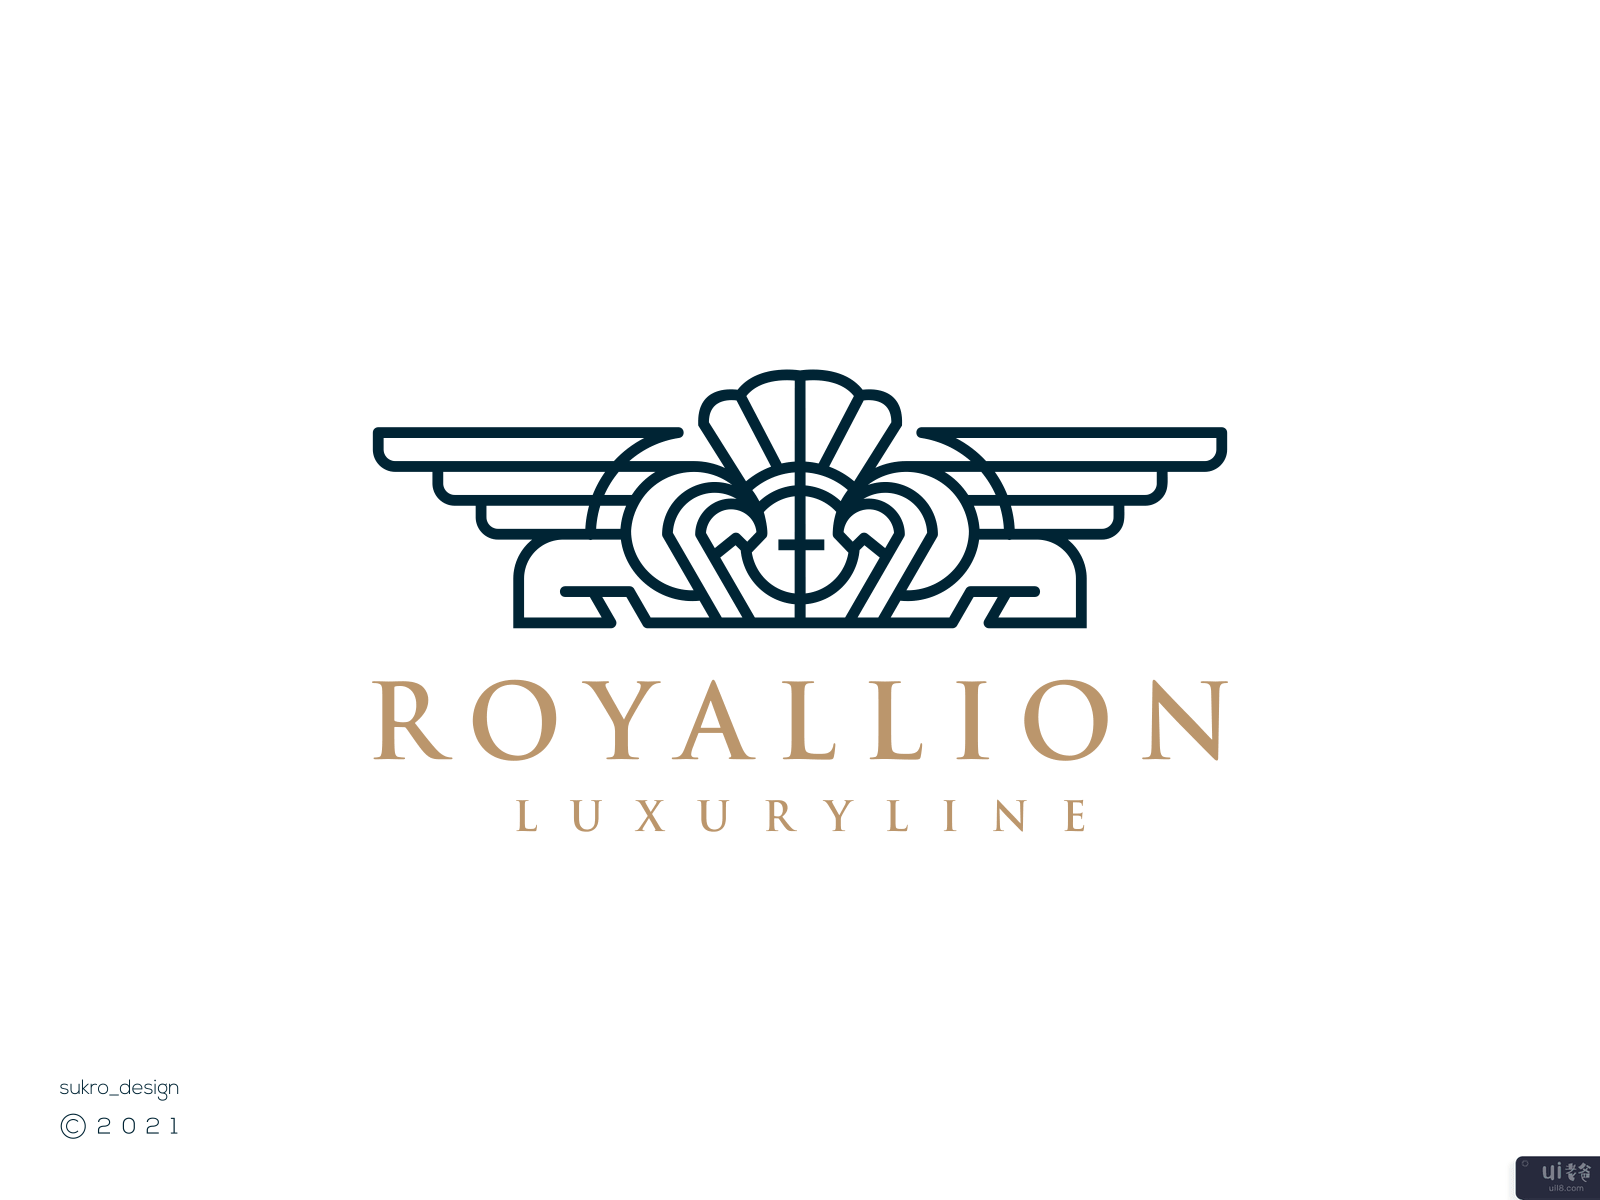 皇家联盟的标志(Royallion logo)插图